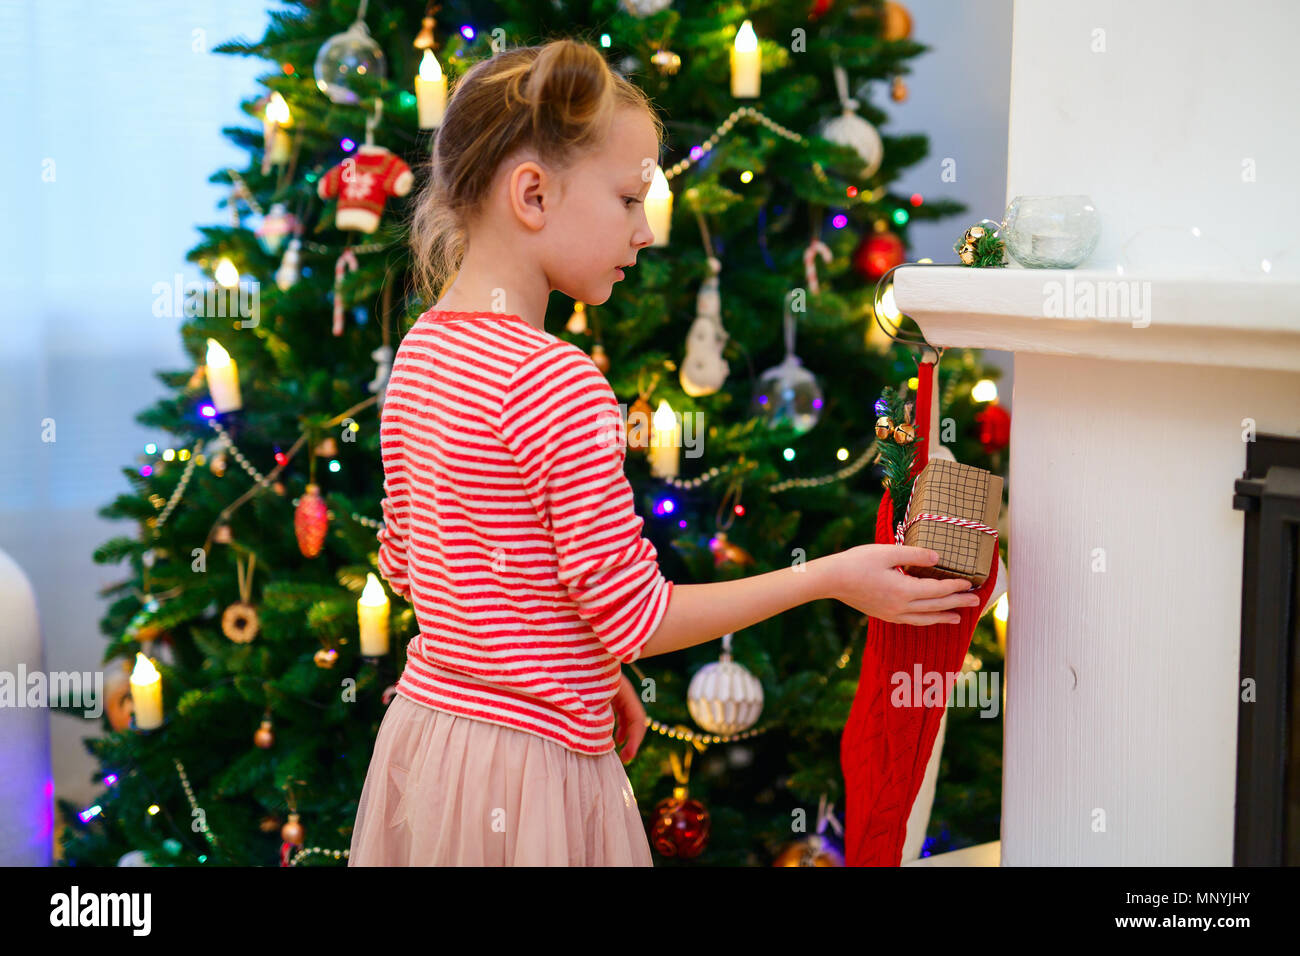 Adorable kleine Mädchen schmücken Weihnachtsbaum mit bunten Christbaumkugeln aus Glas zu Hause Stockfoto